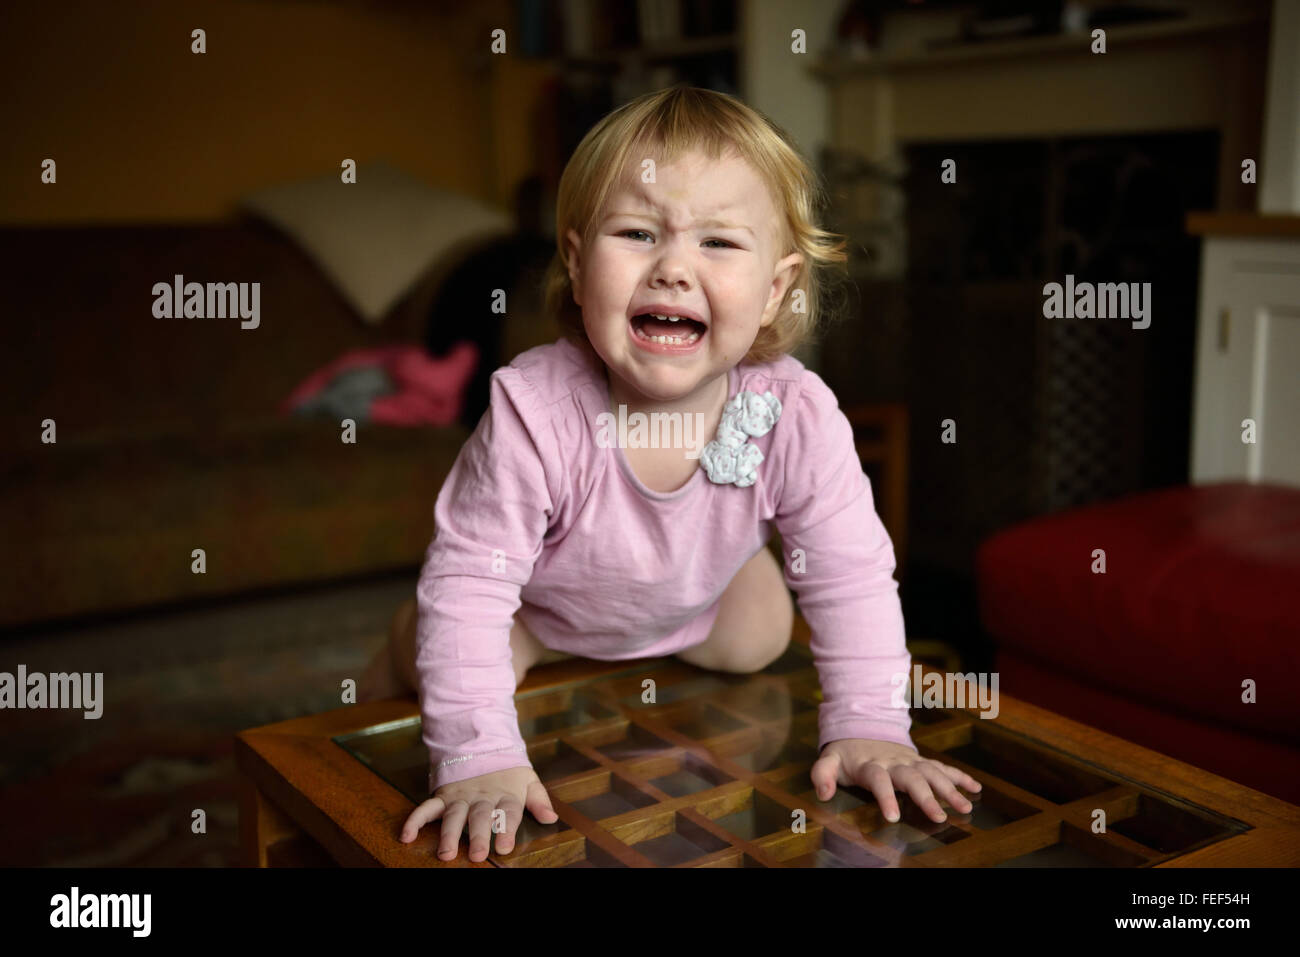 Ein unglücklich achtzehn Monate altes Baby mit einer Temperatur knelling einem Beistelltisch in ihrem Haus weint und sucht unglücklich. Stockfoto